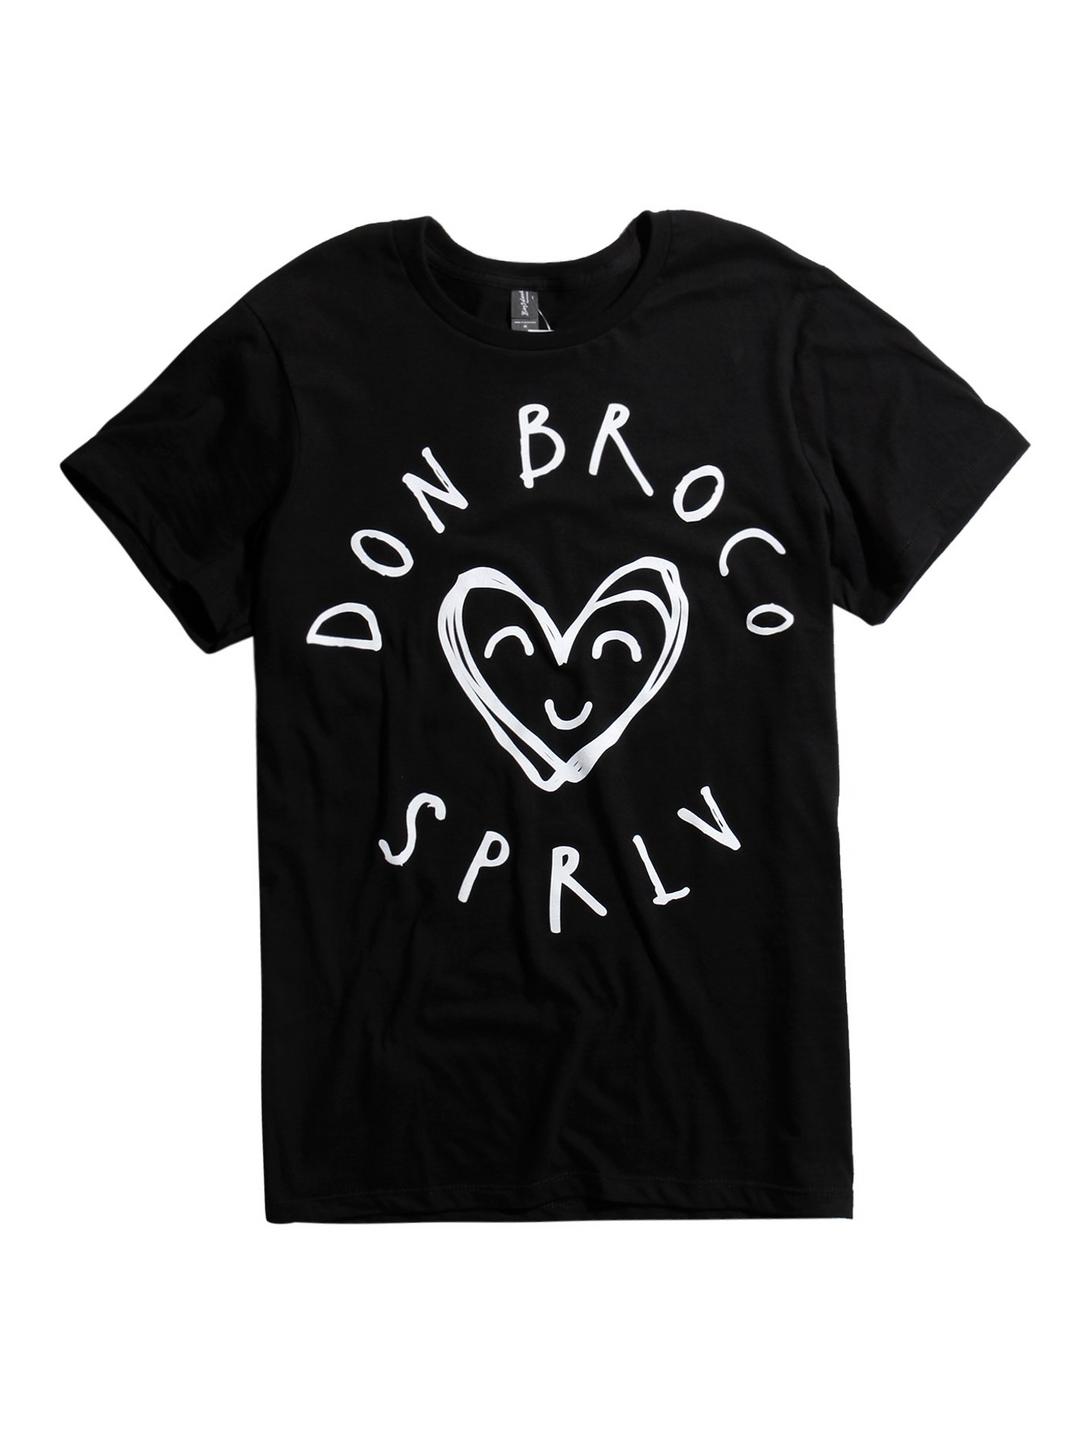 Don Broco Superlove Heart T-Shirt, BLACK, hi-res